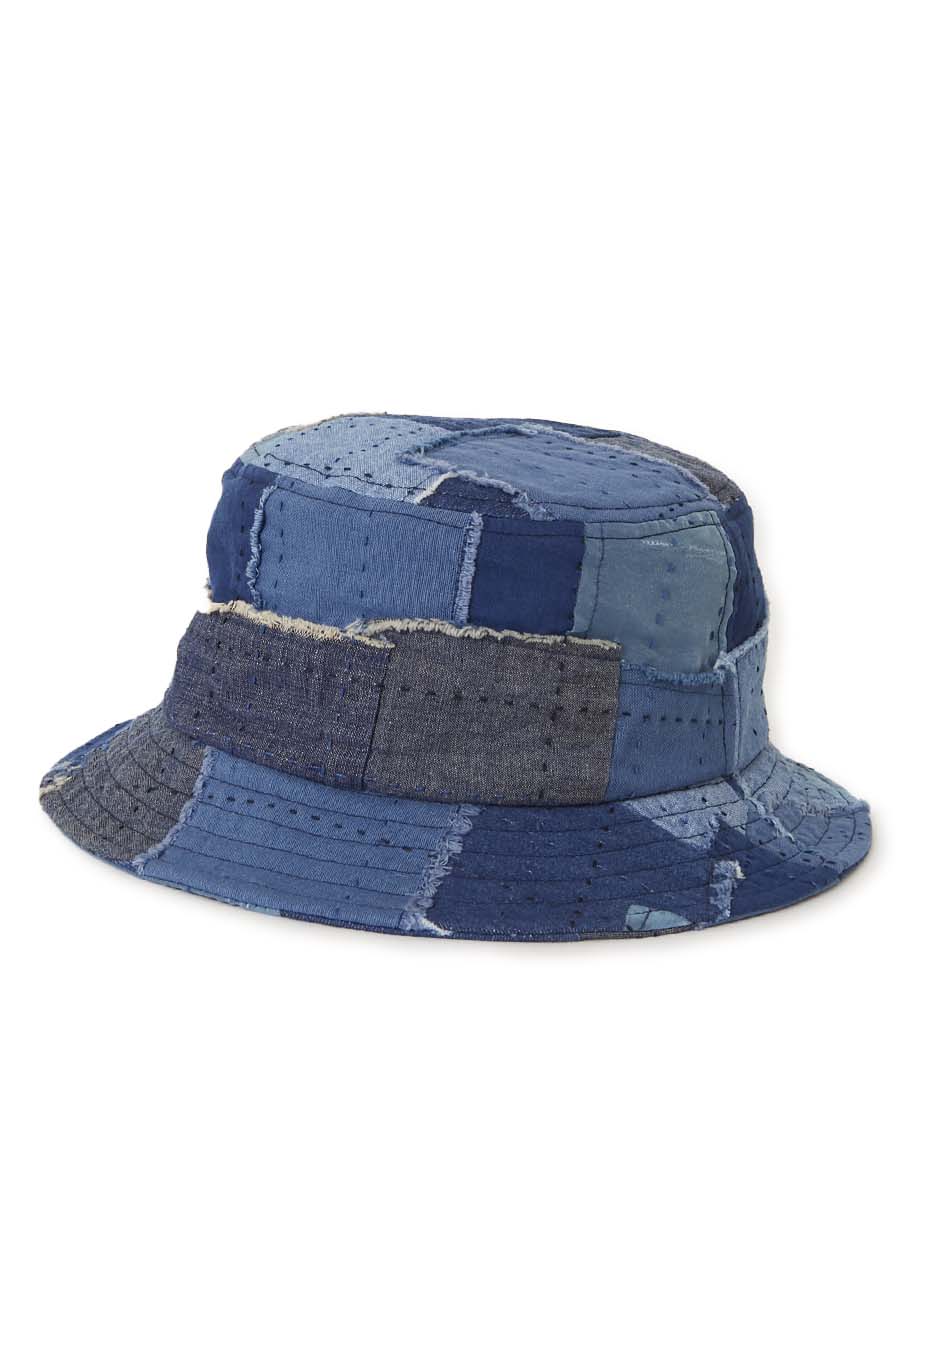 KUON Boro Bucket Hat